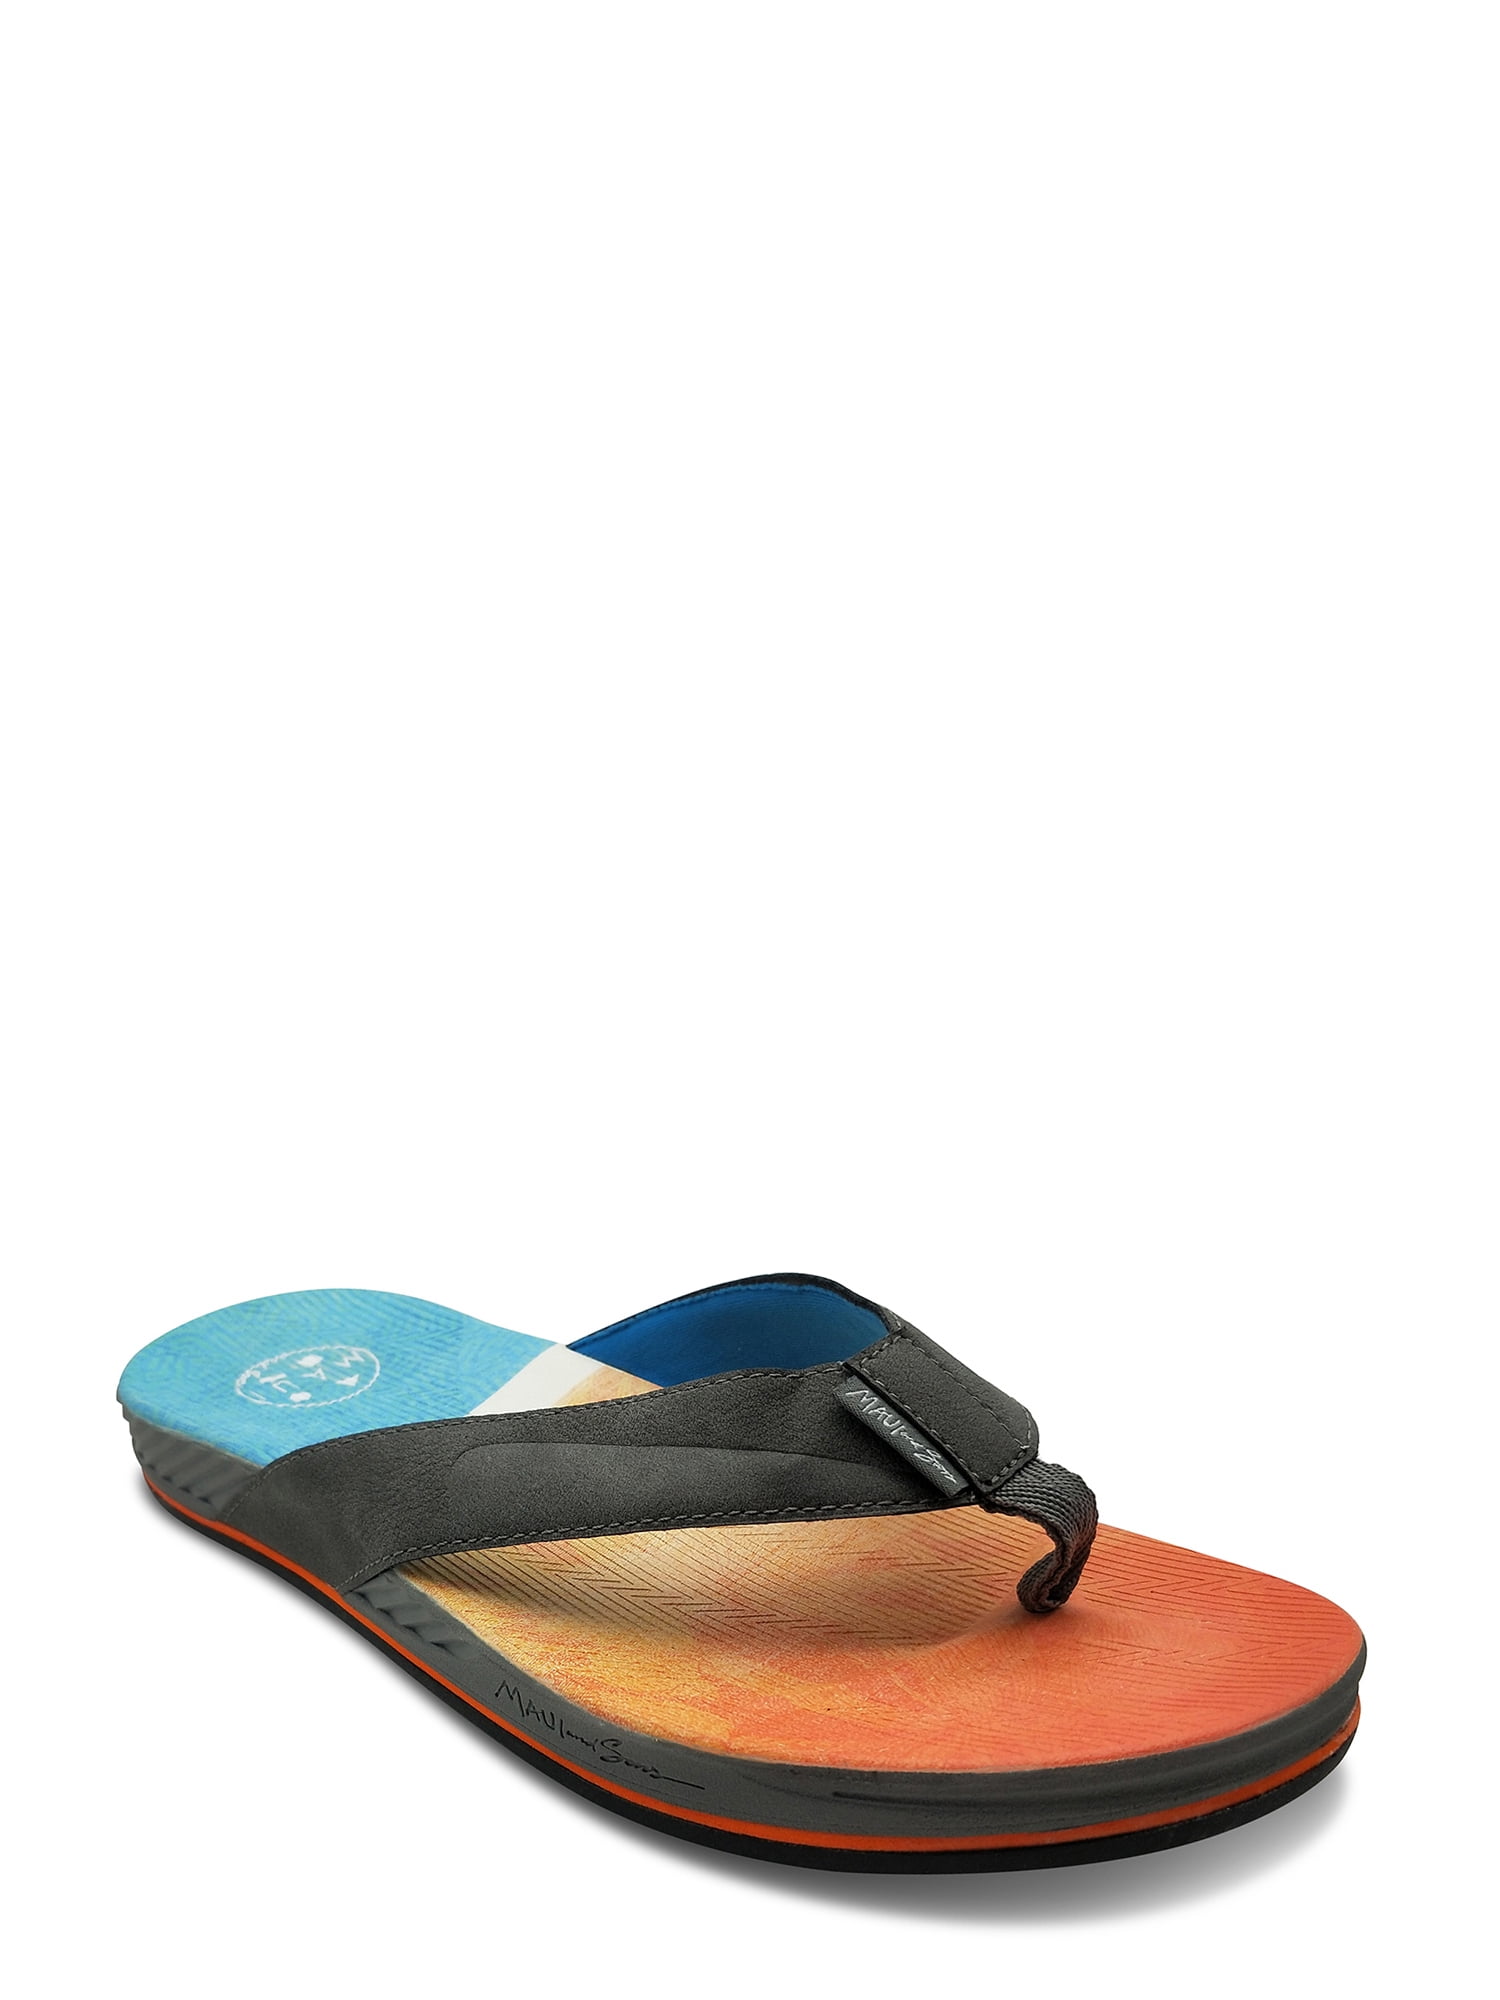 New Mens Maui And Sons Shore Flip Flop Sandal Style 78018 Black 78H pr 